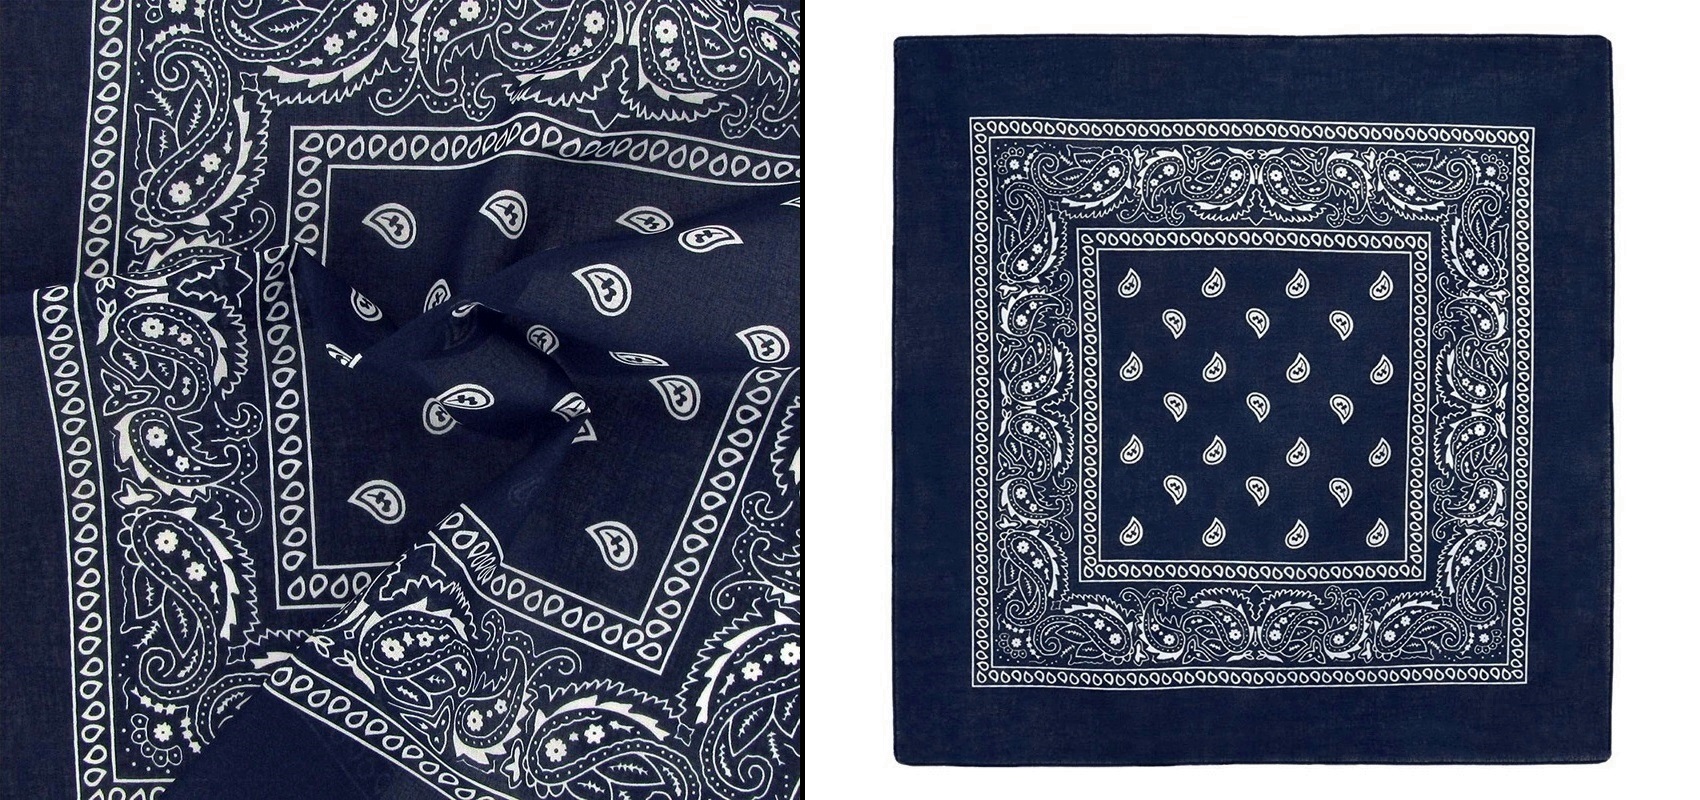 Šátek s paisley vzorem tmavě modrý